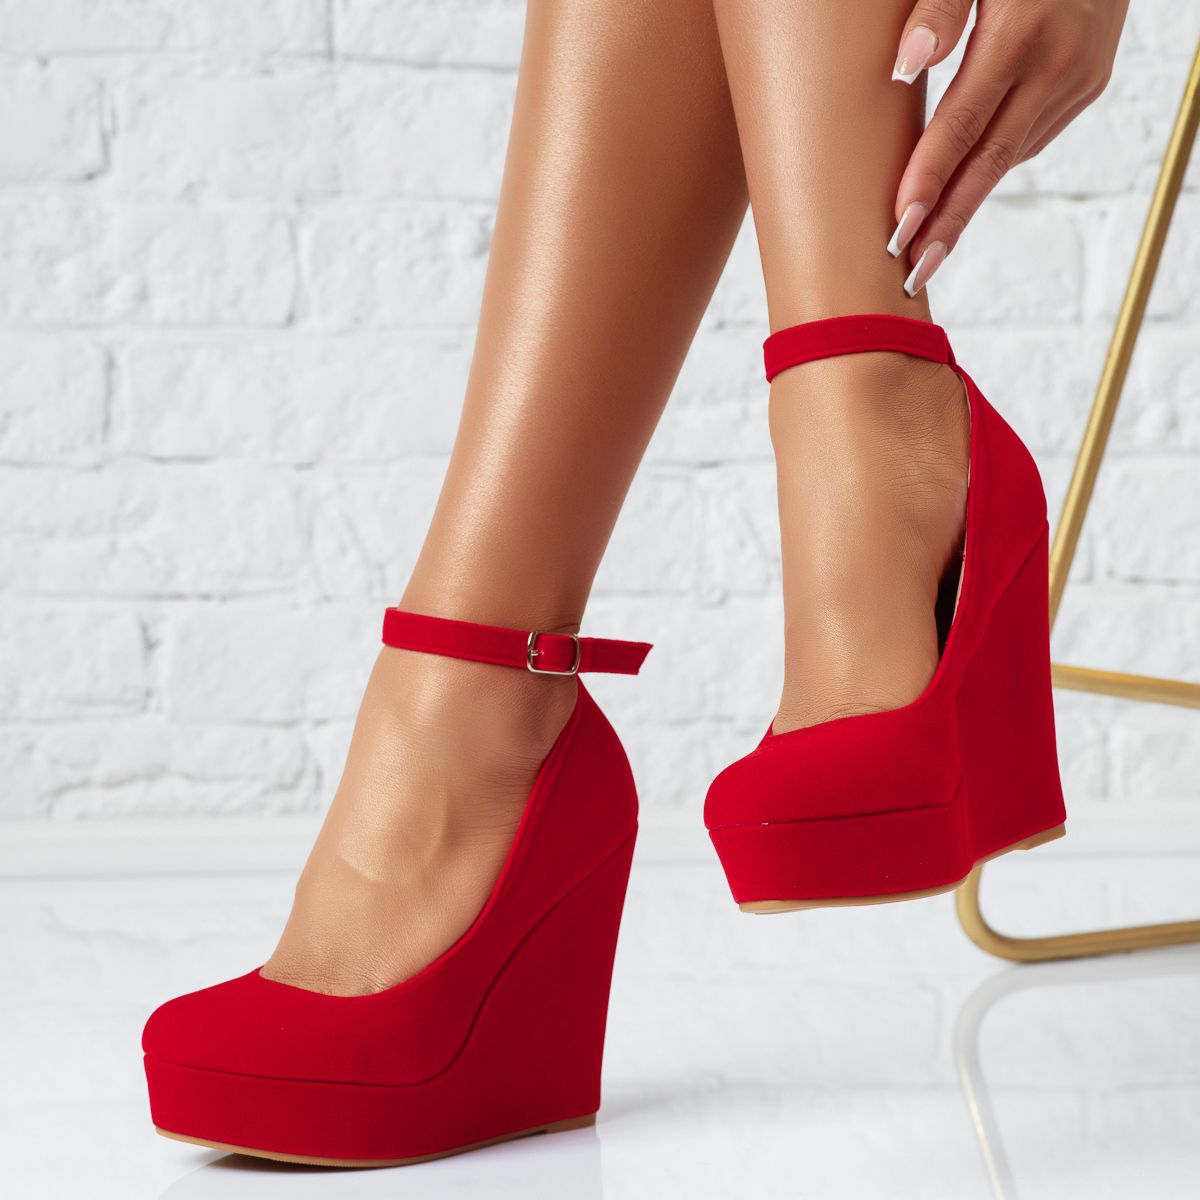 Pantofi Dama cu Platforma Nora Rosii #13954